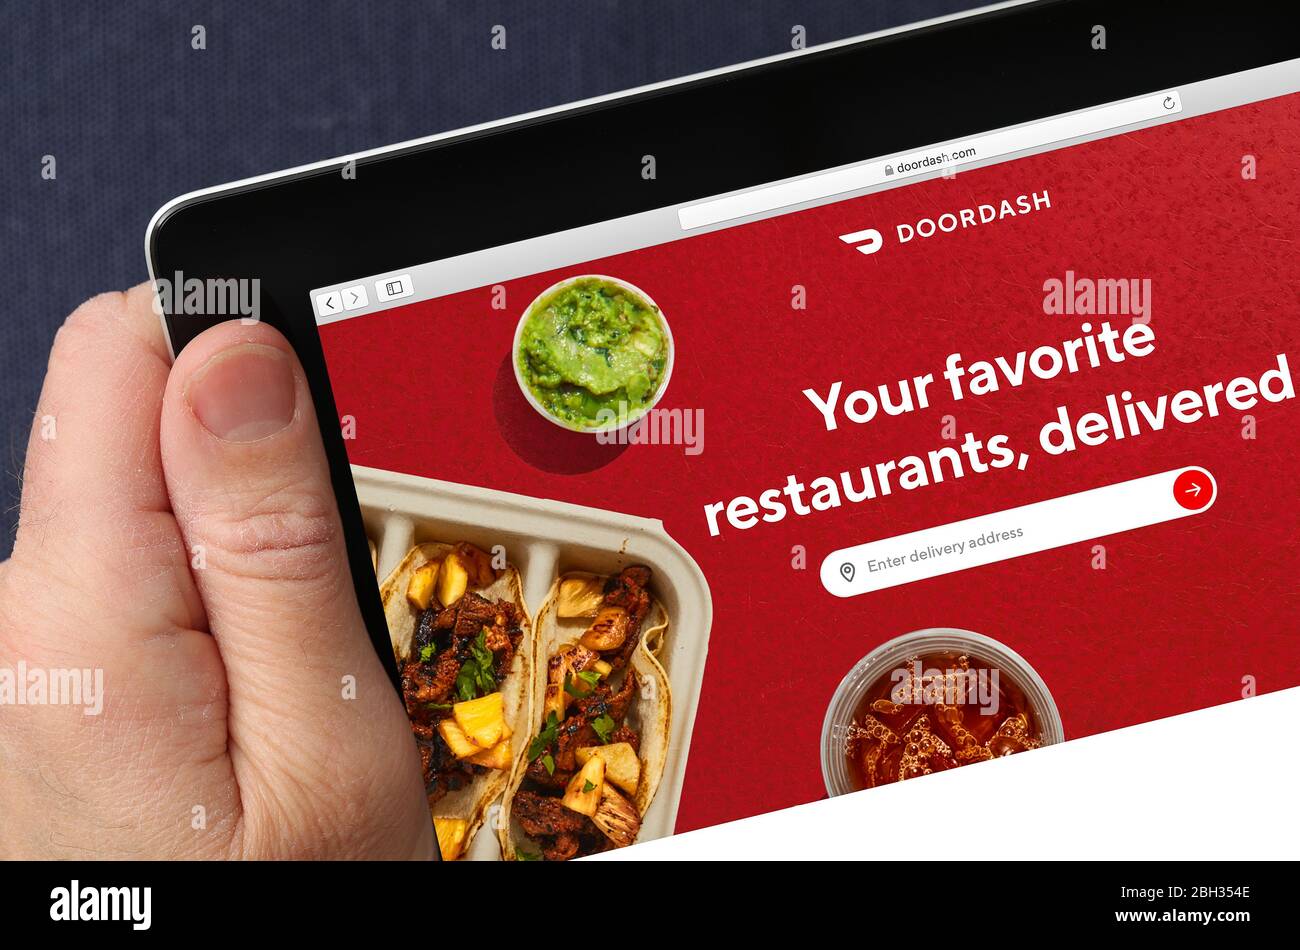 Doordash-Website auf einem iPad (nur redaktionelle Verwendung) Stockfoto